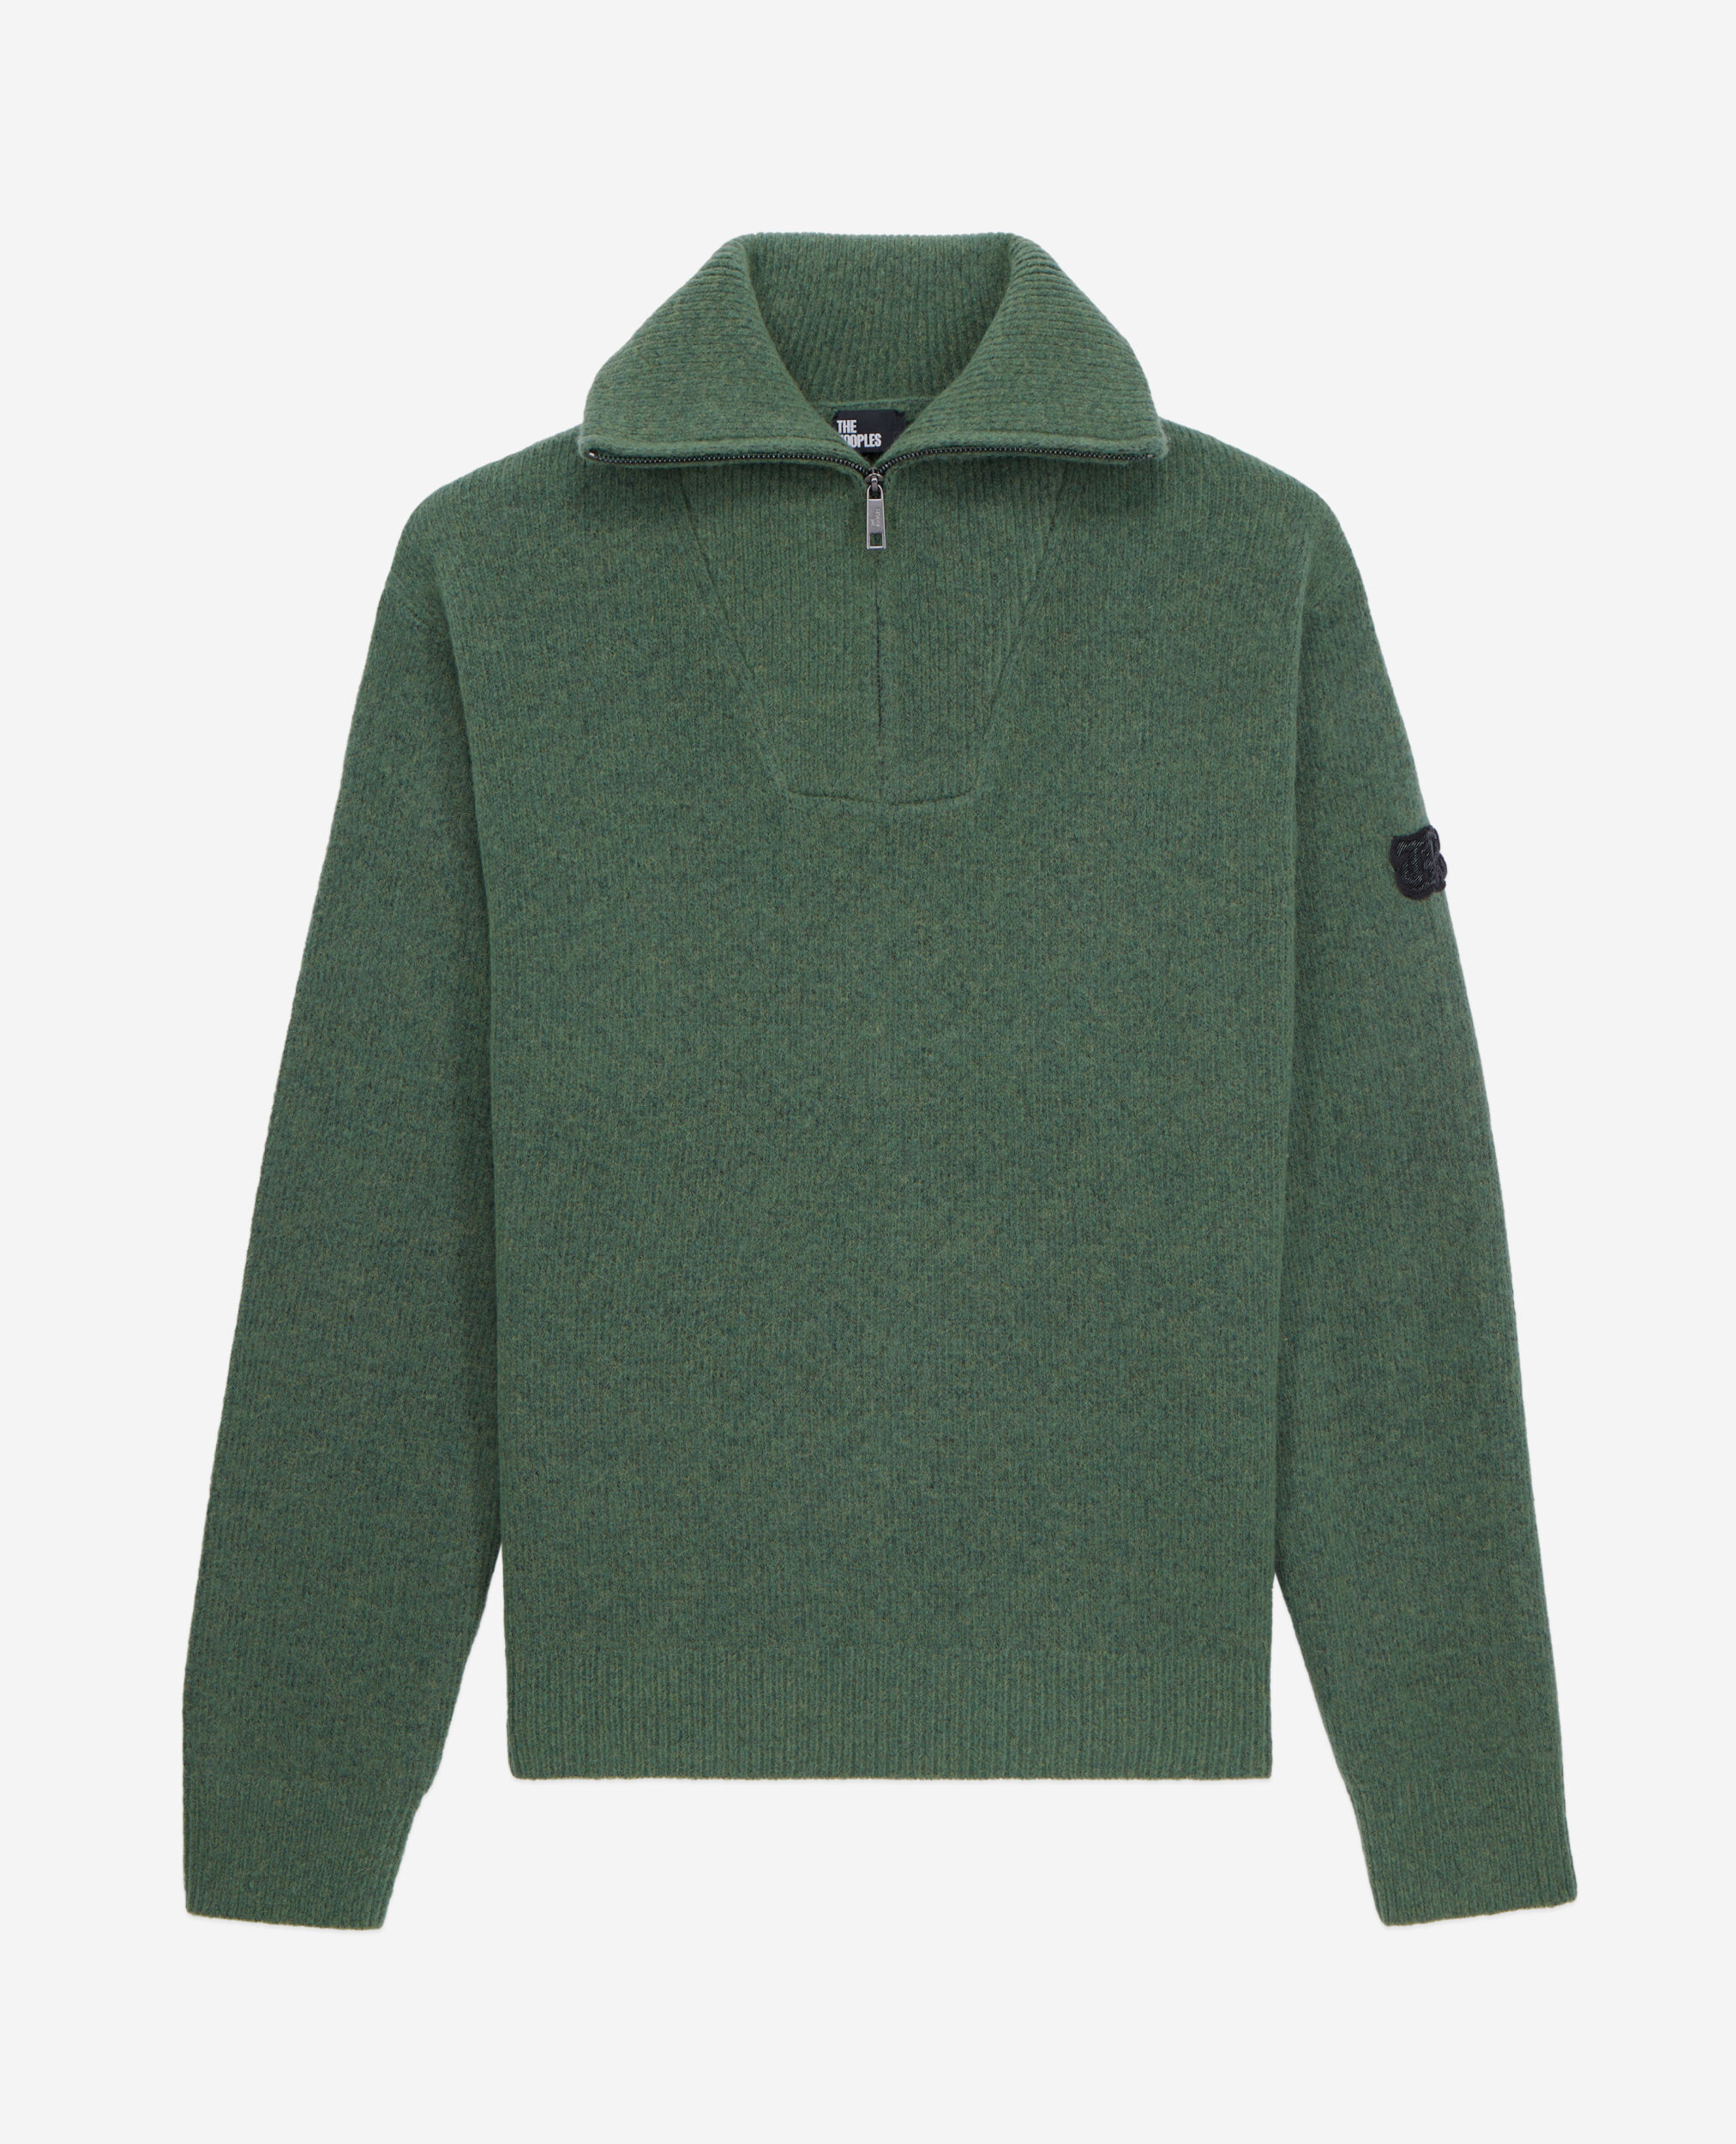 Grüner Pullover aus Wolle und Alpaka, FOREST, hi-res image number null